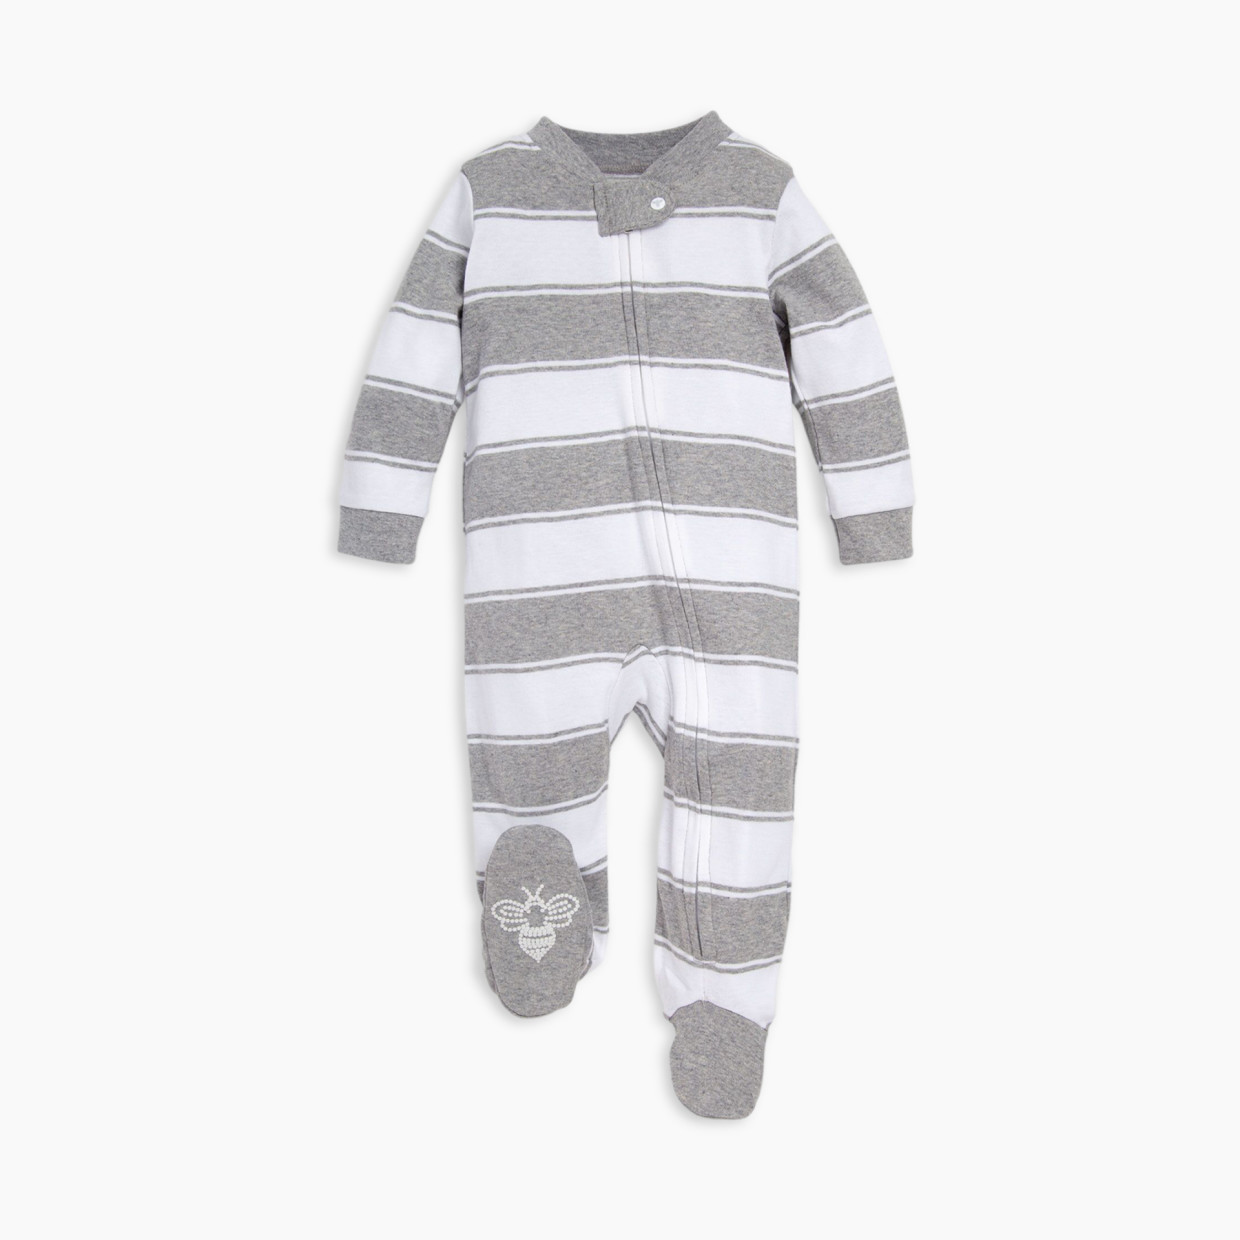 Burt's Bees Baby Organic Sleep & Play Footie Pajamas - Heather Grey Rugby Peace Stripe, Newborn.